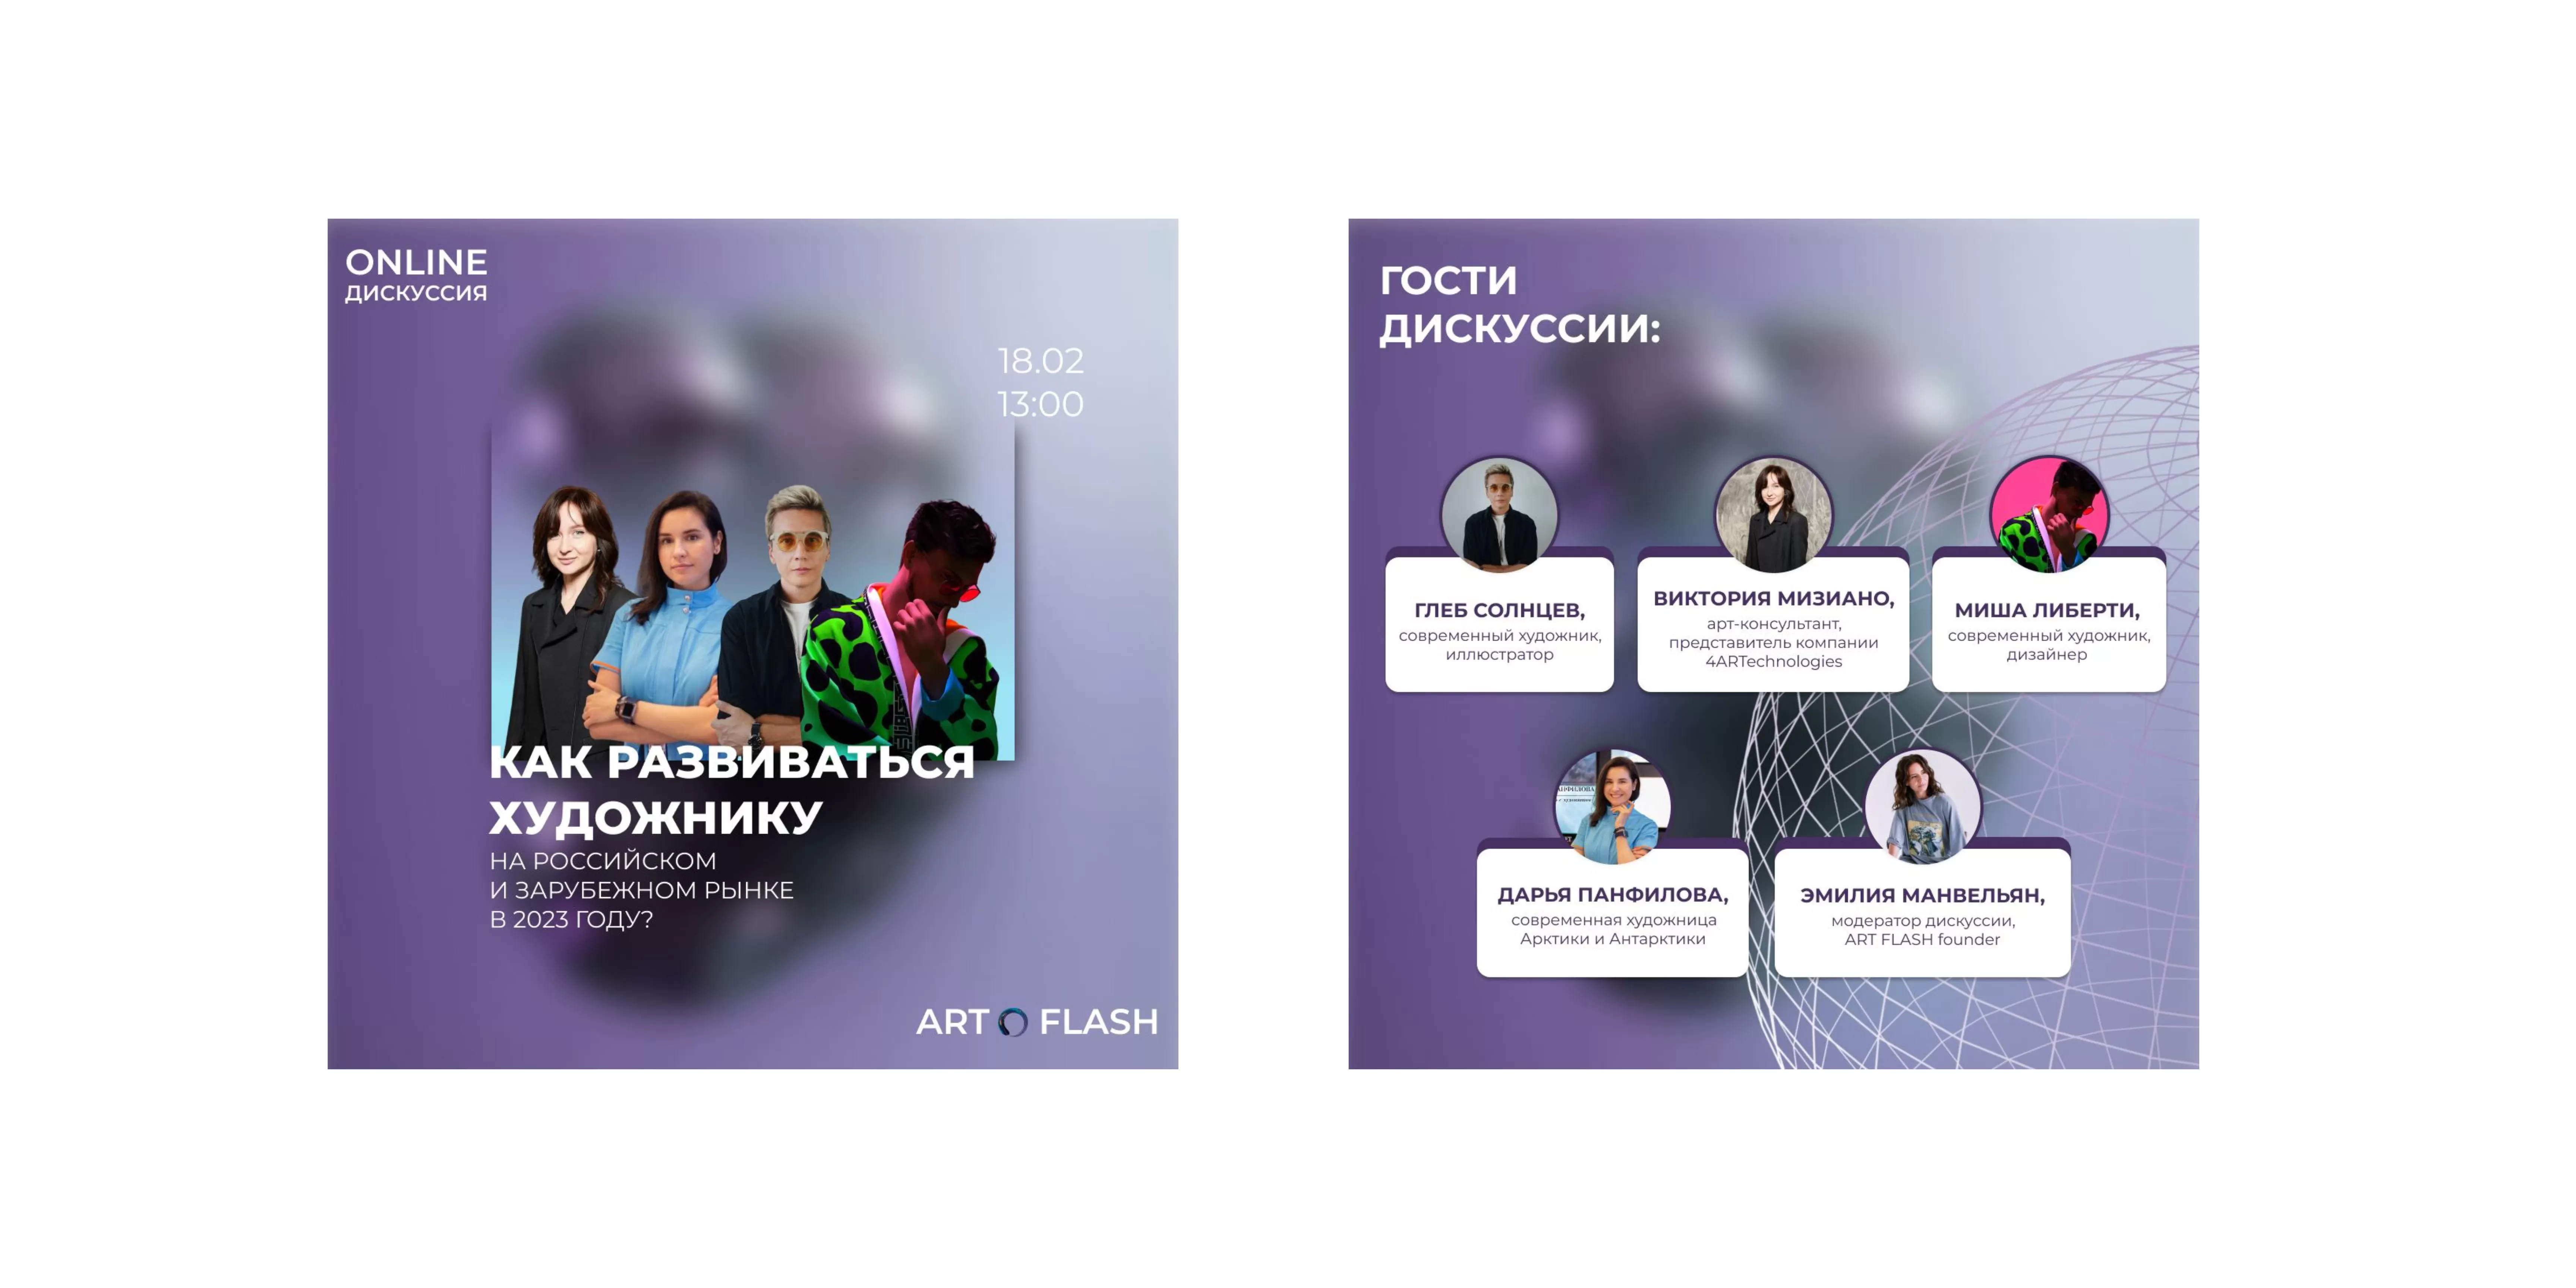 Онлайн-дискуссия «Как развиваться художнику на российском и зарубежном рынке в 2023 году?»